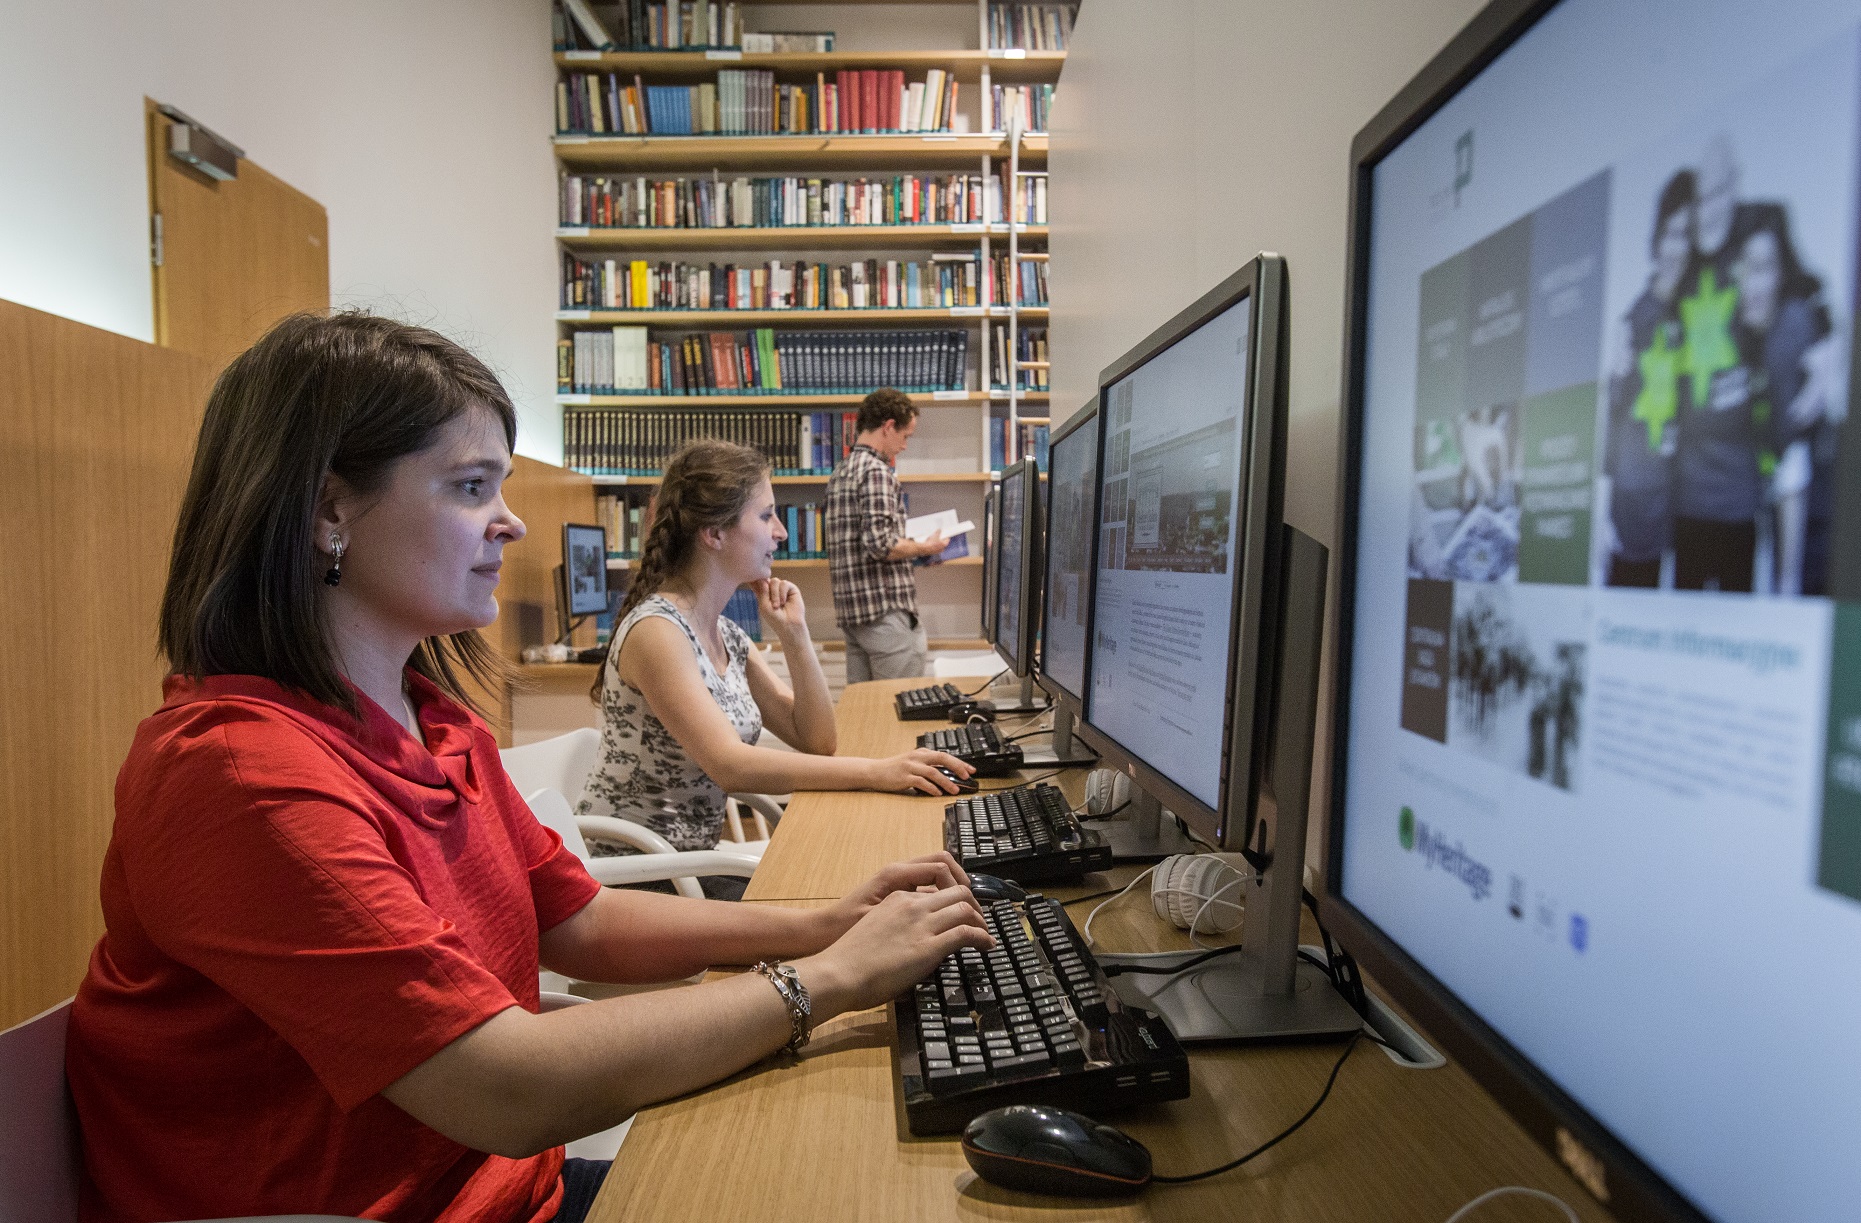 Dwie kobiety pracują przy komputerach. Na ekranie wyświetlają się strony internetowe portali edukacyjnych Muzeum POLIN.